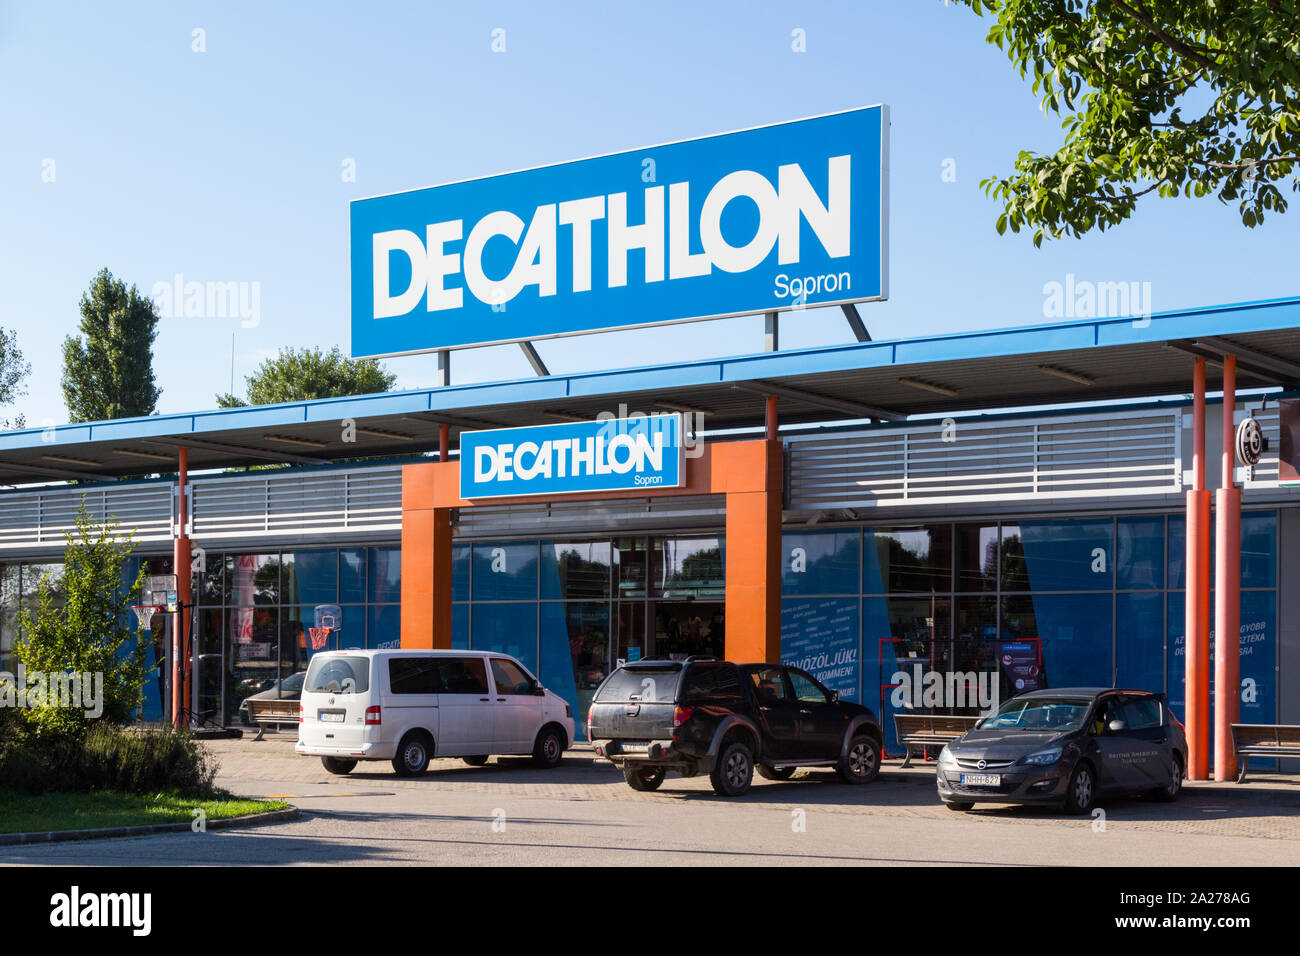 Decathlon sport sports magasin de détail magasin façade avant avec grand panneau, Sopron, Hongrie Banque D'Images